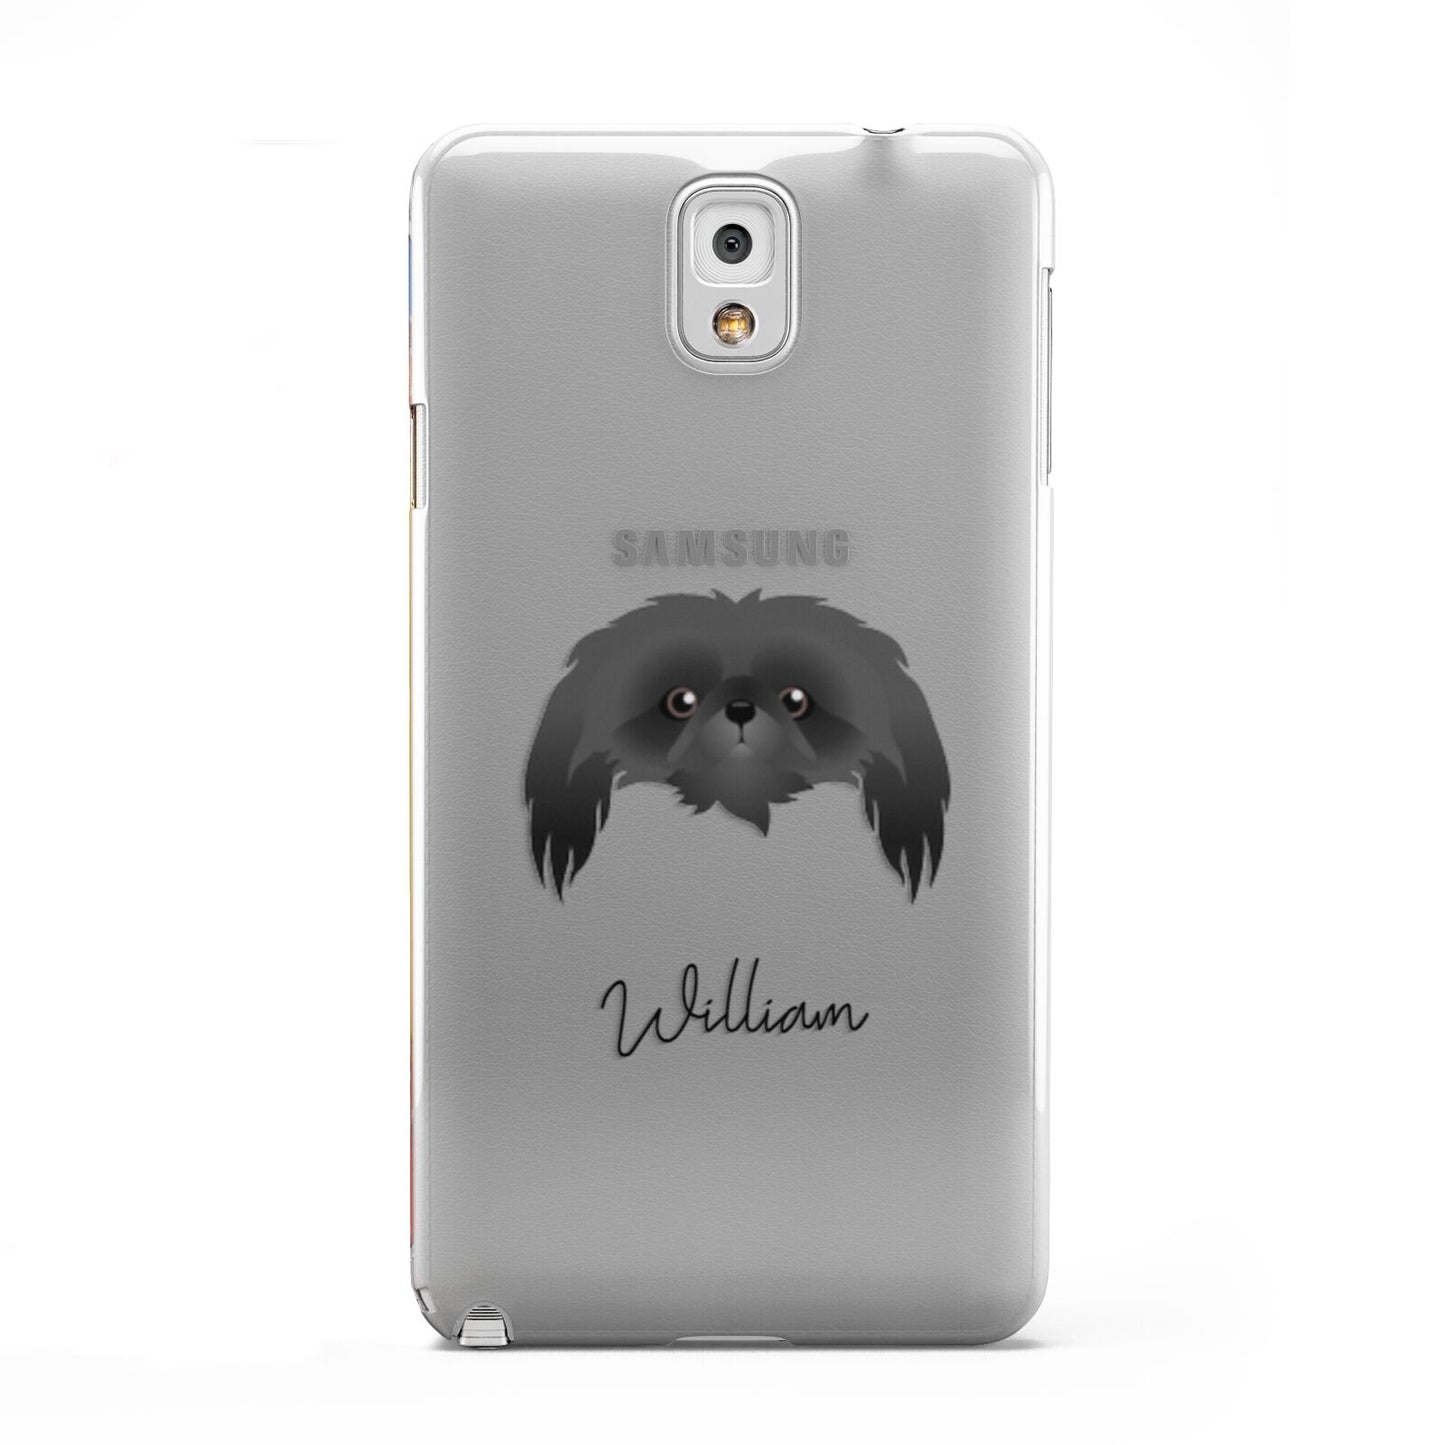 Pekingese Personalised Samsung Galaxy Note 3 Case